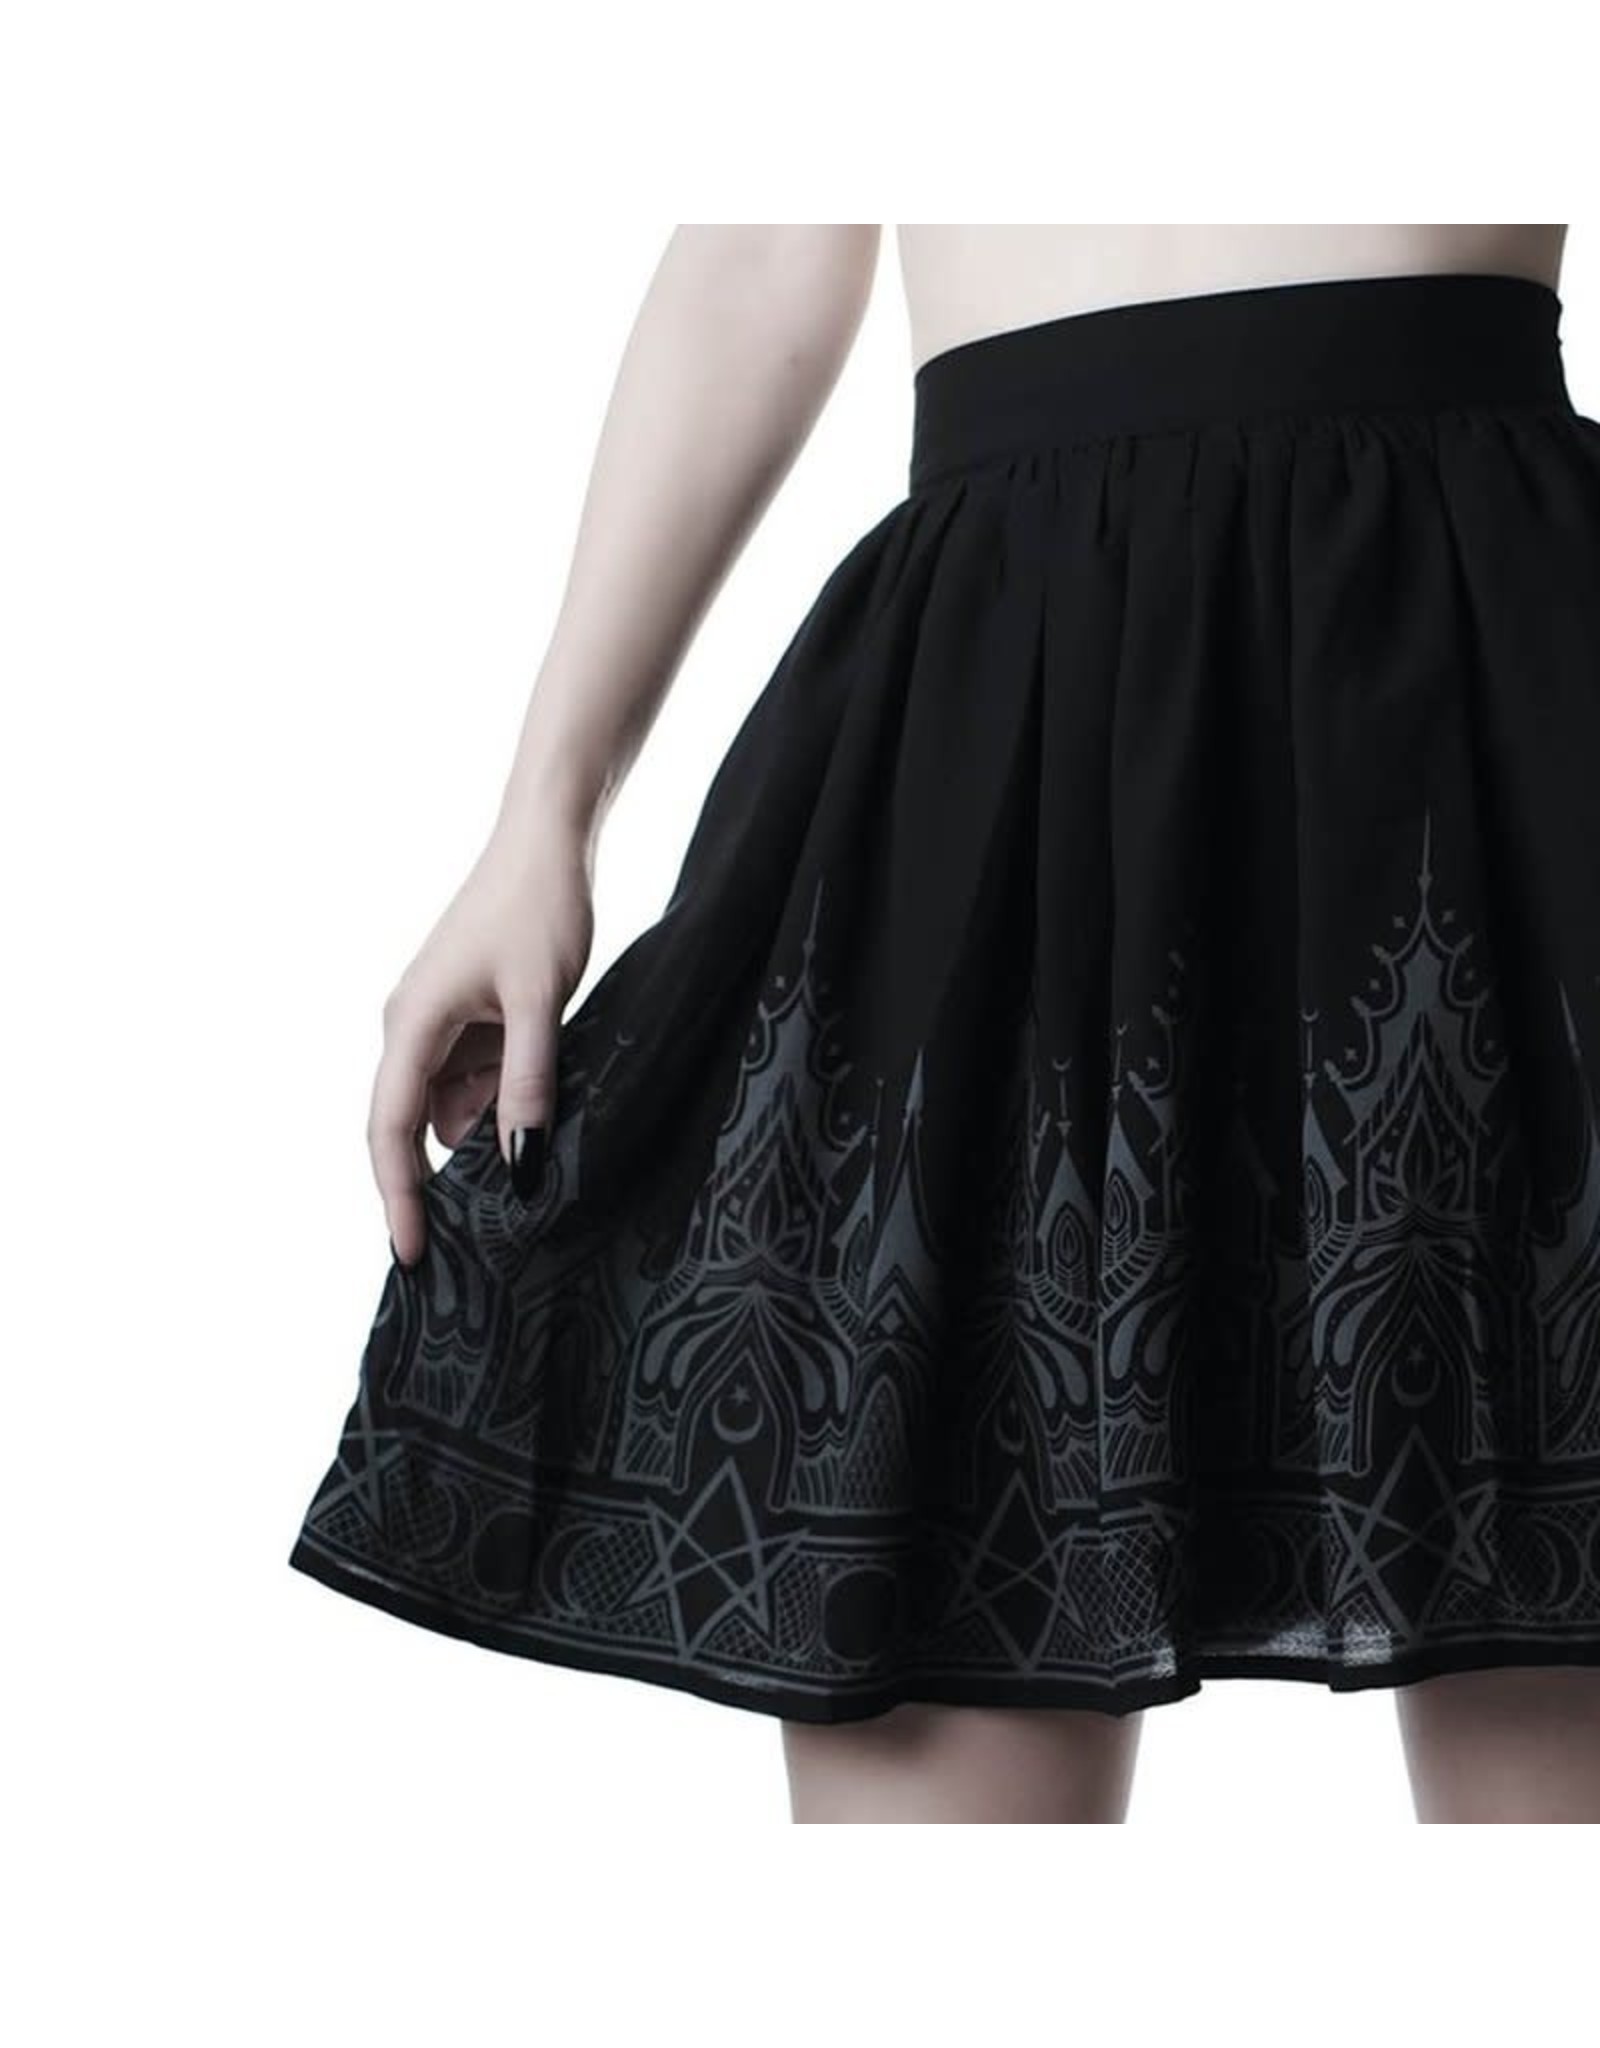 Duchess Chiffon Skirt